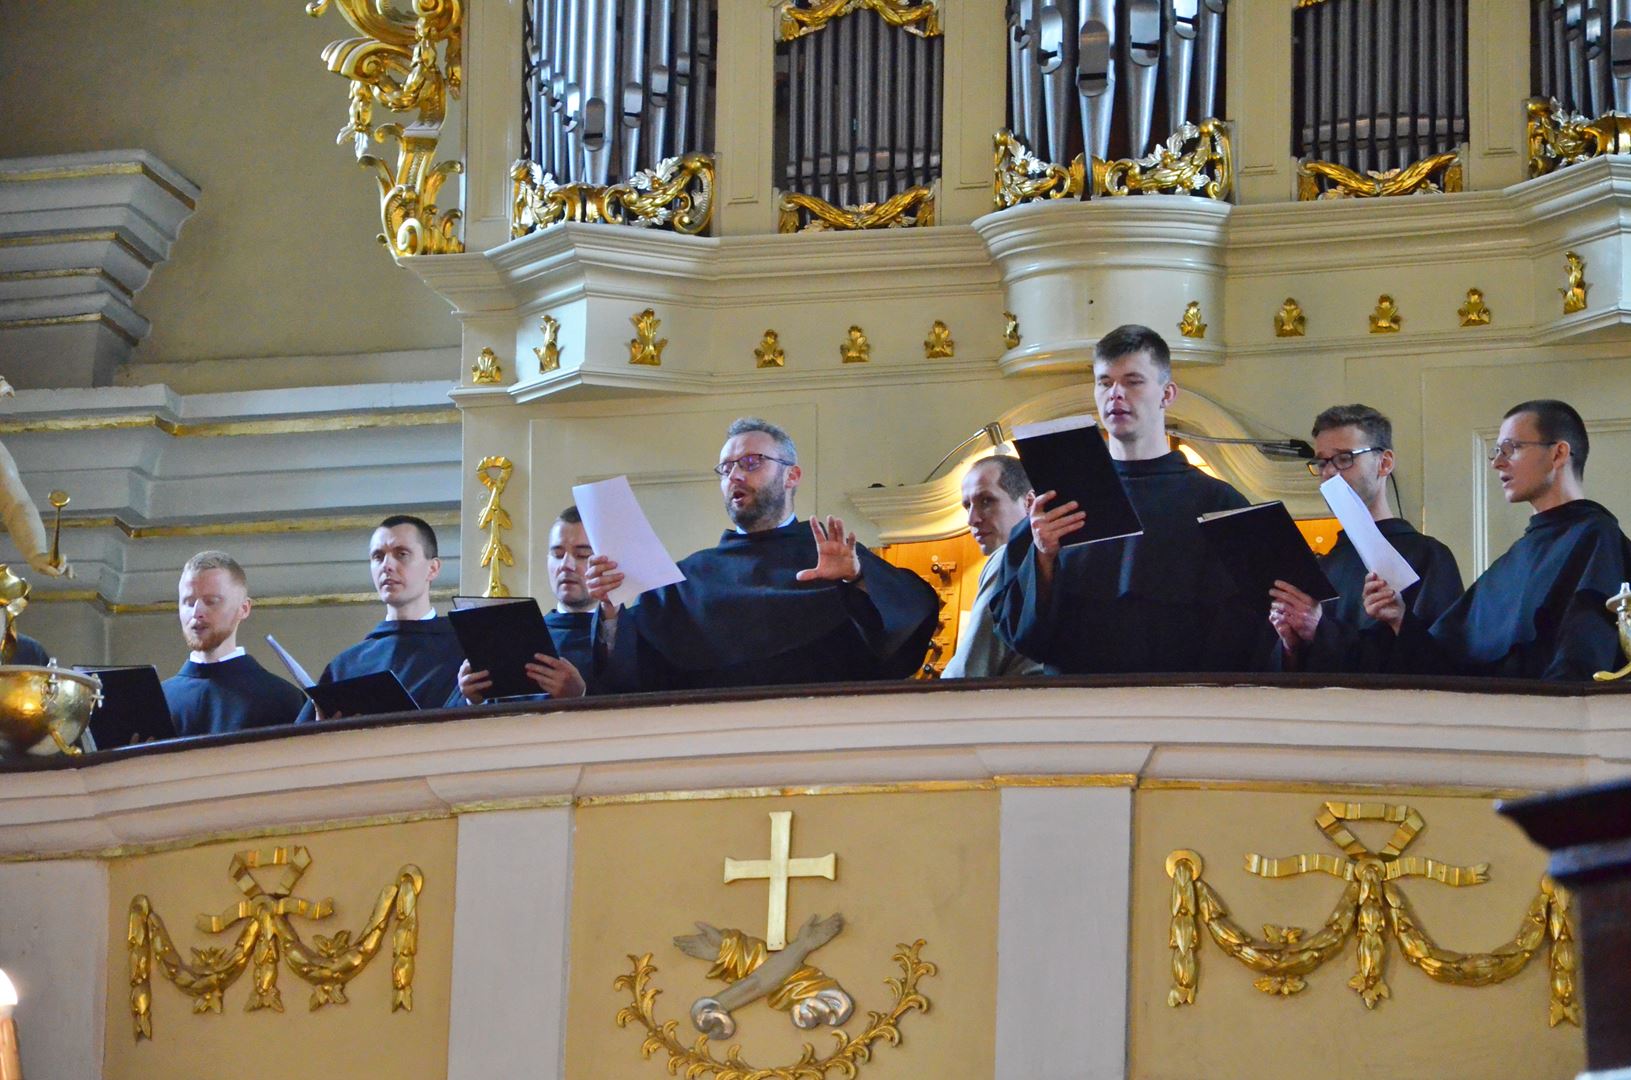 Vigningens sakrament för diakoner och präster hos Gråbröderna den 29 maj 2021, i Lódź, Polen. Foto: Gråbröderna